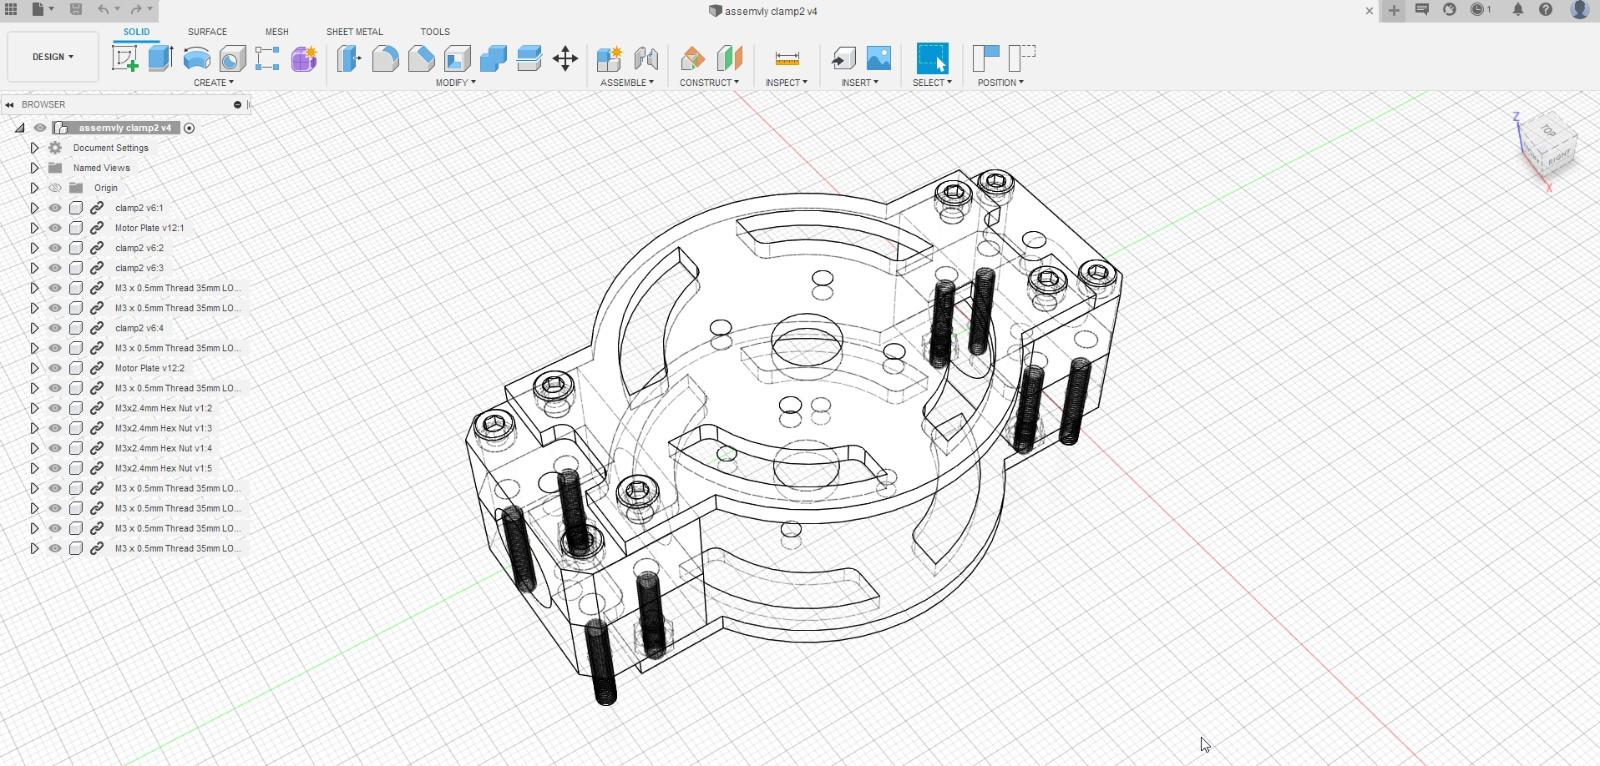 A CAD design for a motor bracket